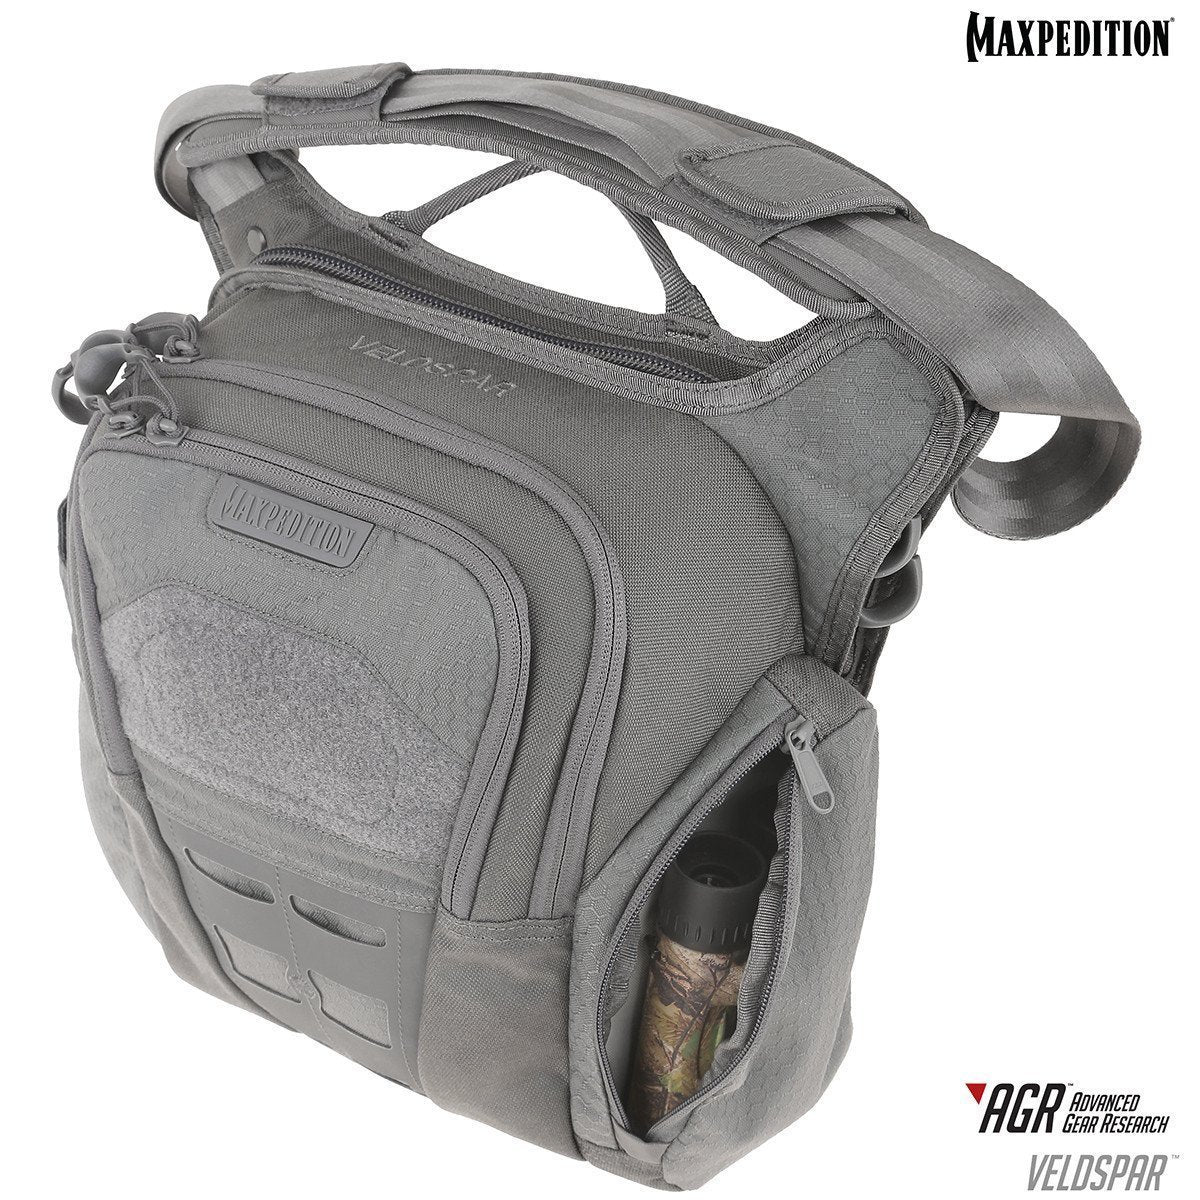 Maxpedition Veldspar Crossbody Shoulder Bag 8L Tactical Distributors Ltd New Zealand